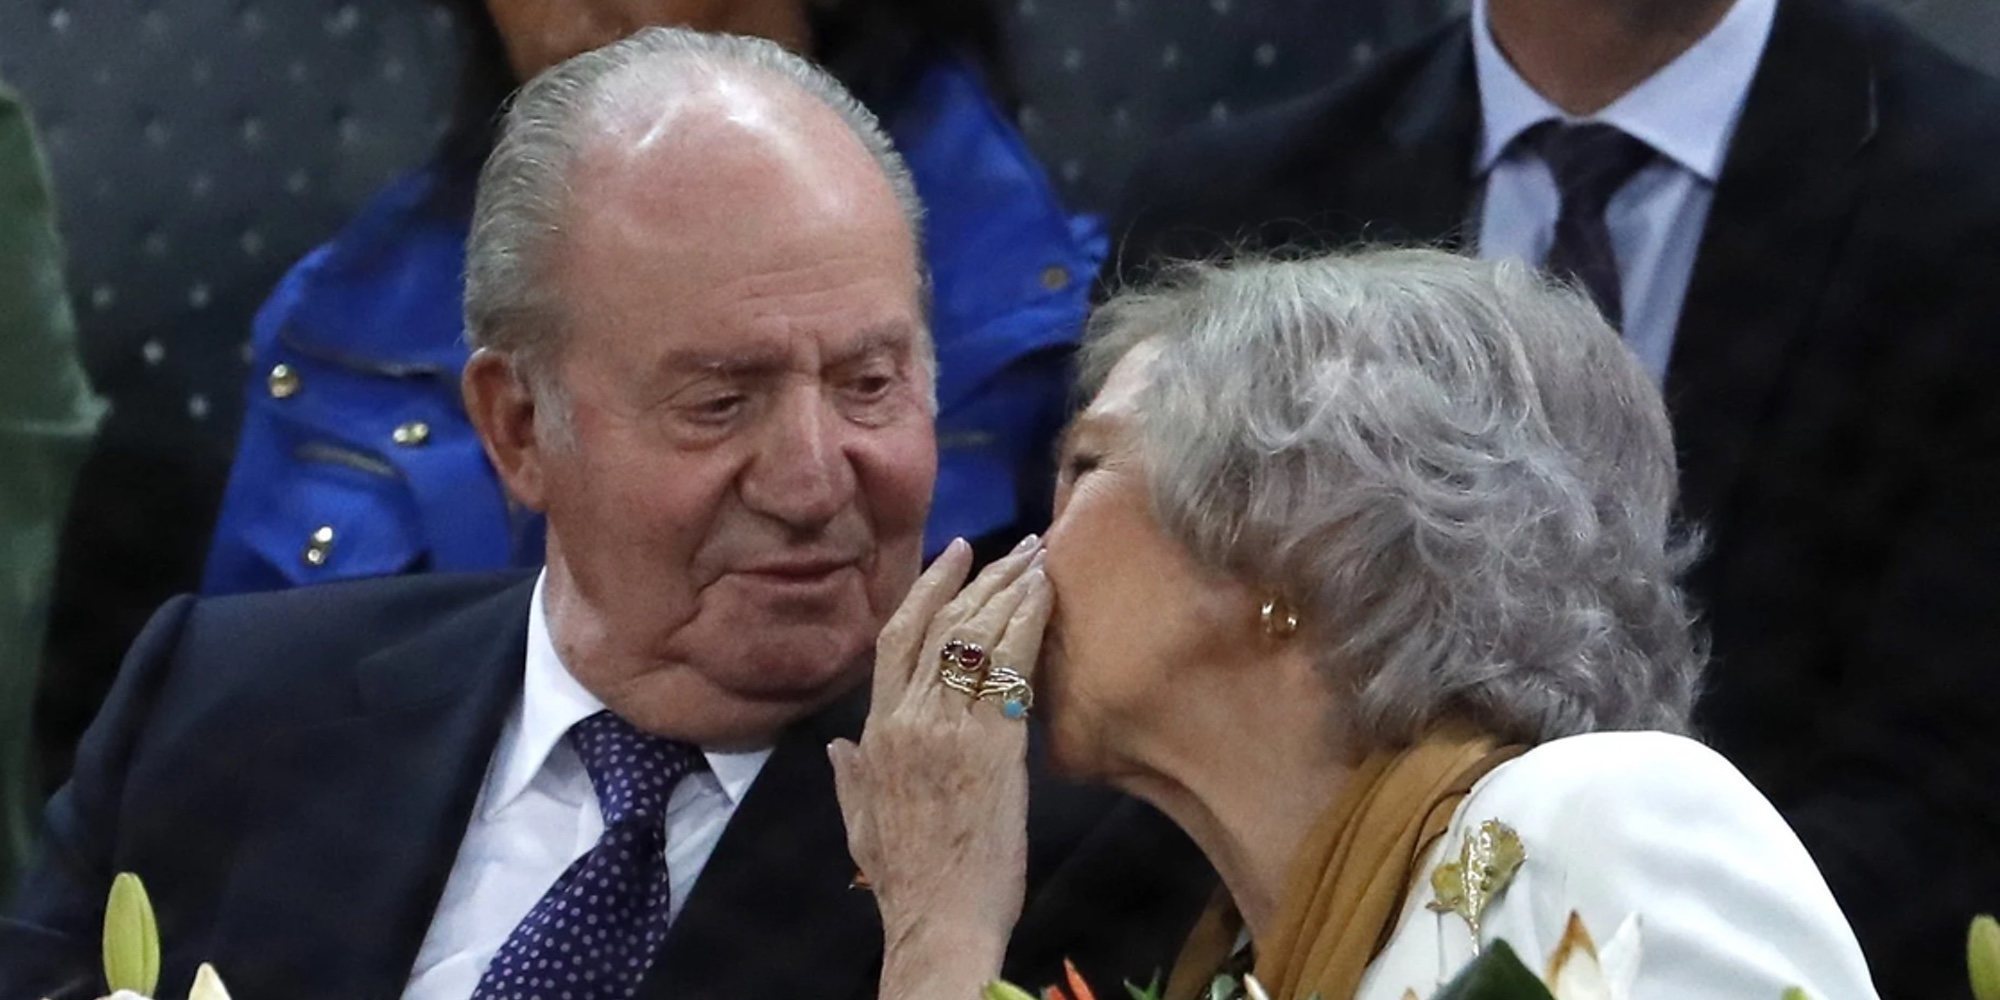 La pregunta de la Reina Sofía al Rey Juan Carlos en su despedida: "¿A quién te vas a llevar?"